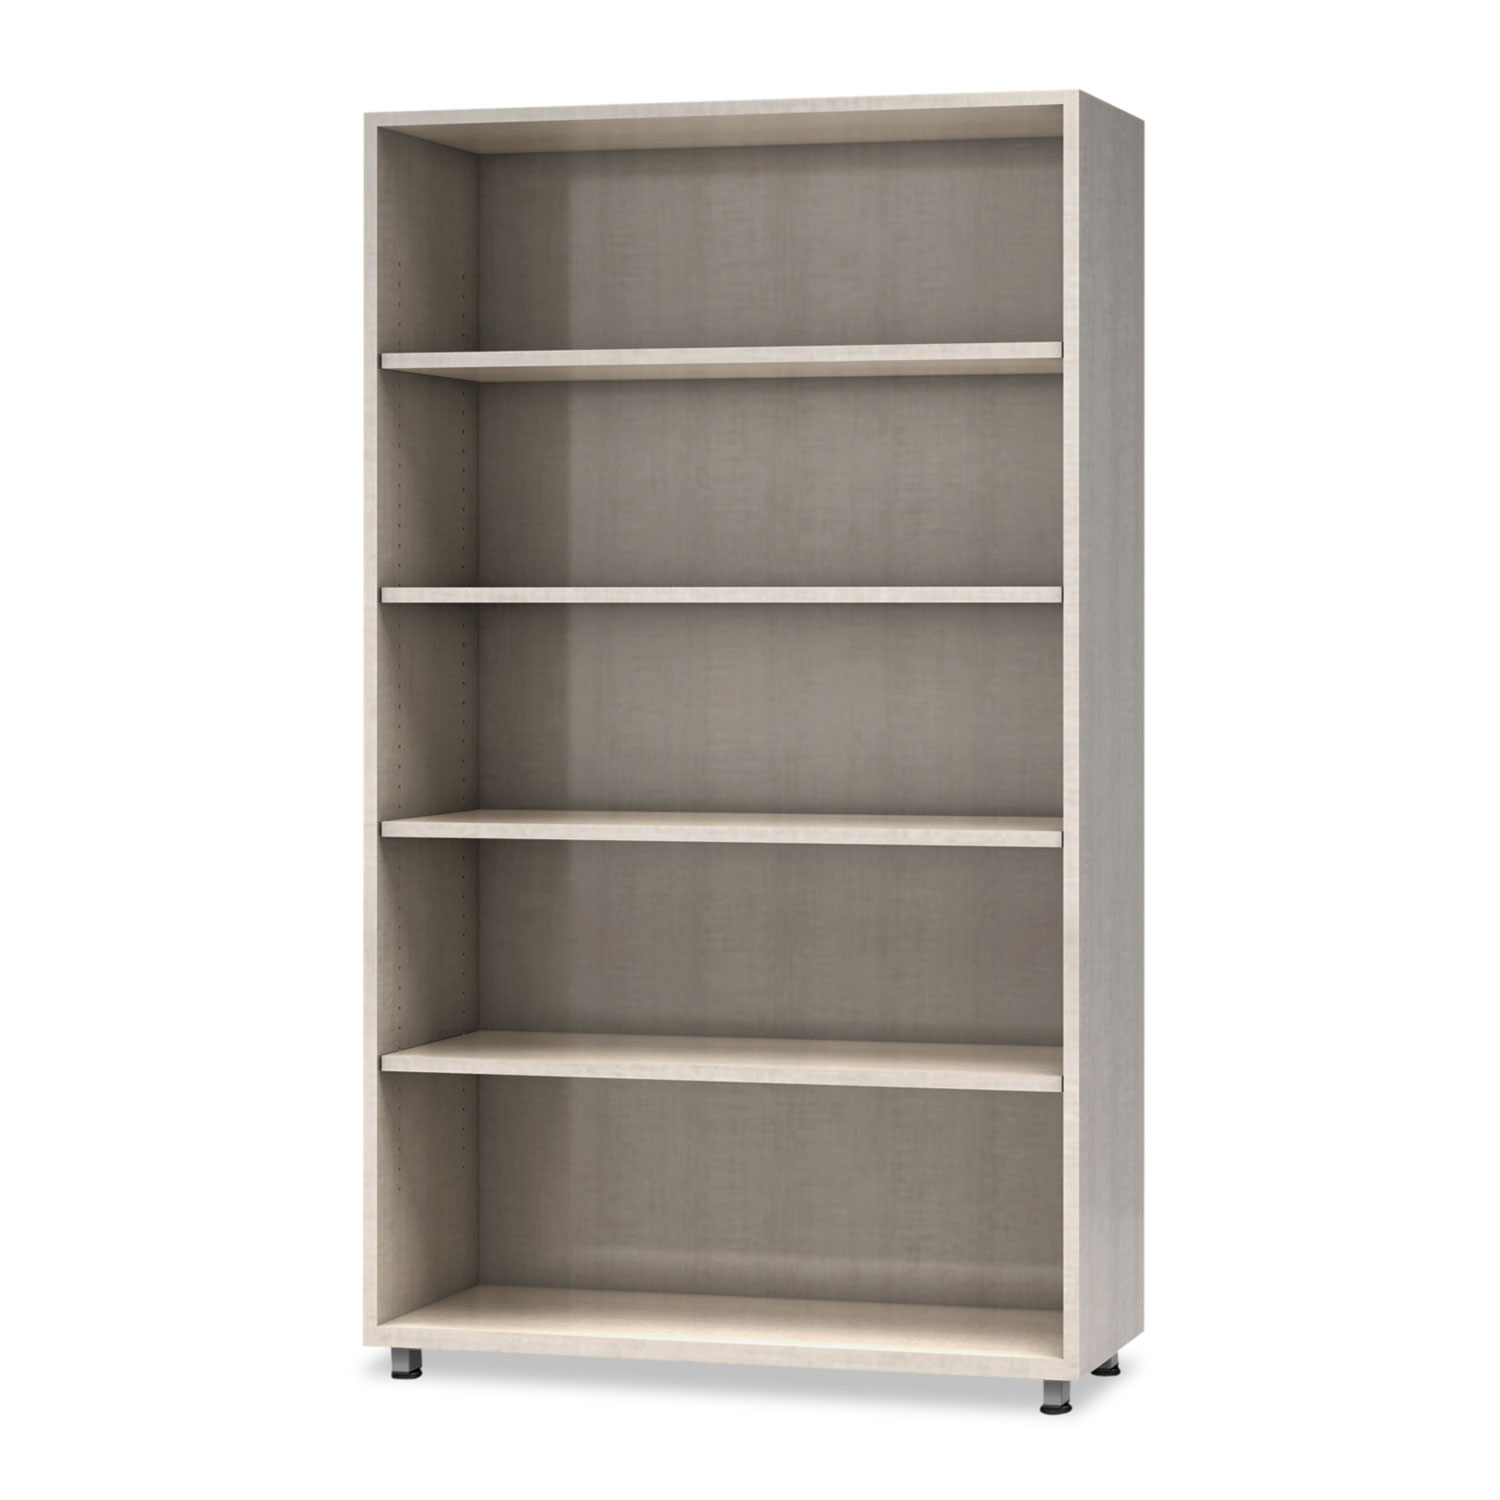  Safco EZBC3662AGY e5 Series Five-Shelf Bookcase, 36w x 15d x 62h, Summer Suede (MLNEZBC3662AGY) 